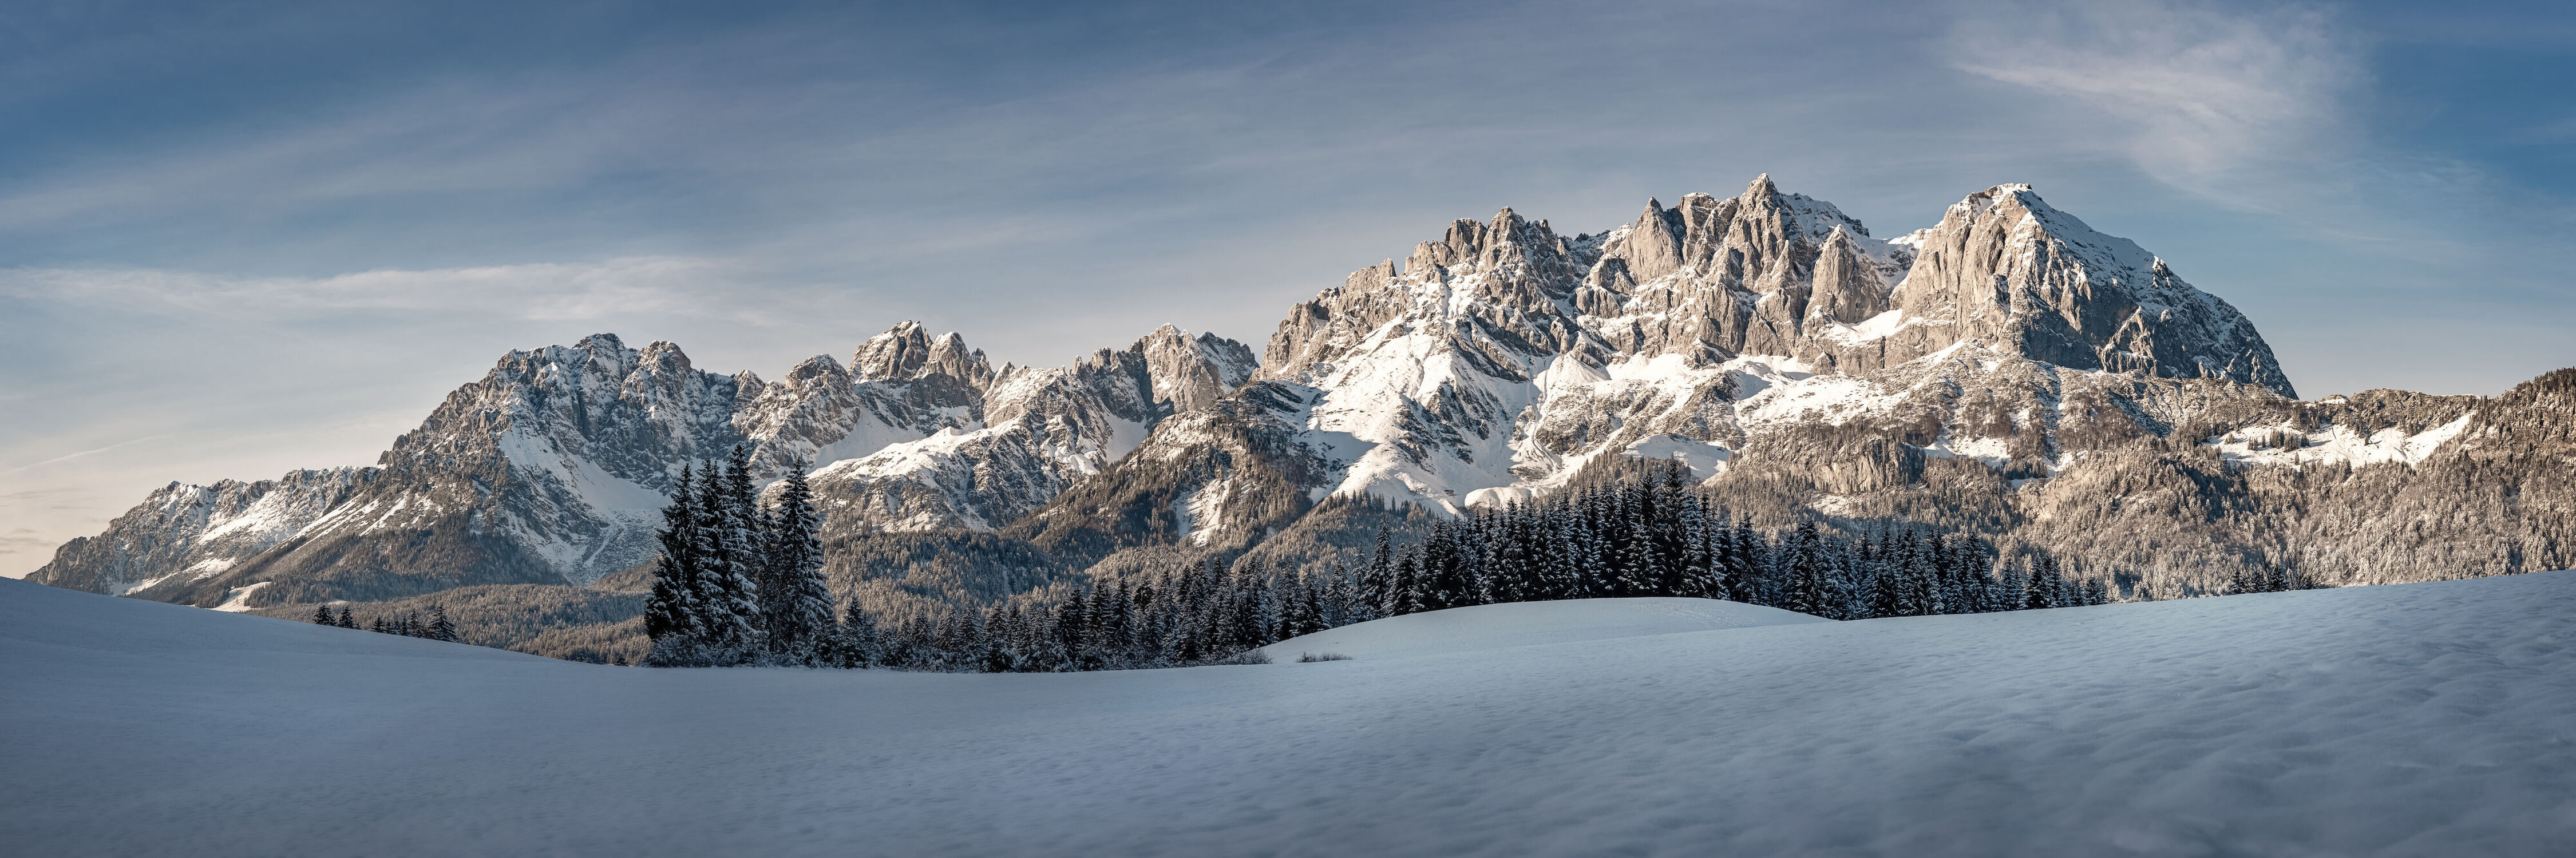 Bild mit Tirol, Gebirgskette, Alpen Panorama, Alpen Panorama, winterlandschaft, Berglandschaft, Wilder Kaiser, Alpenlandschaft, Wilderkaiser